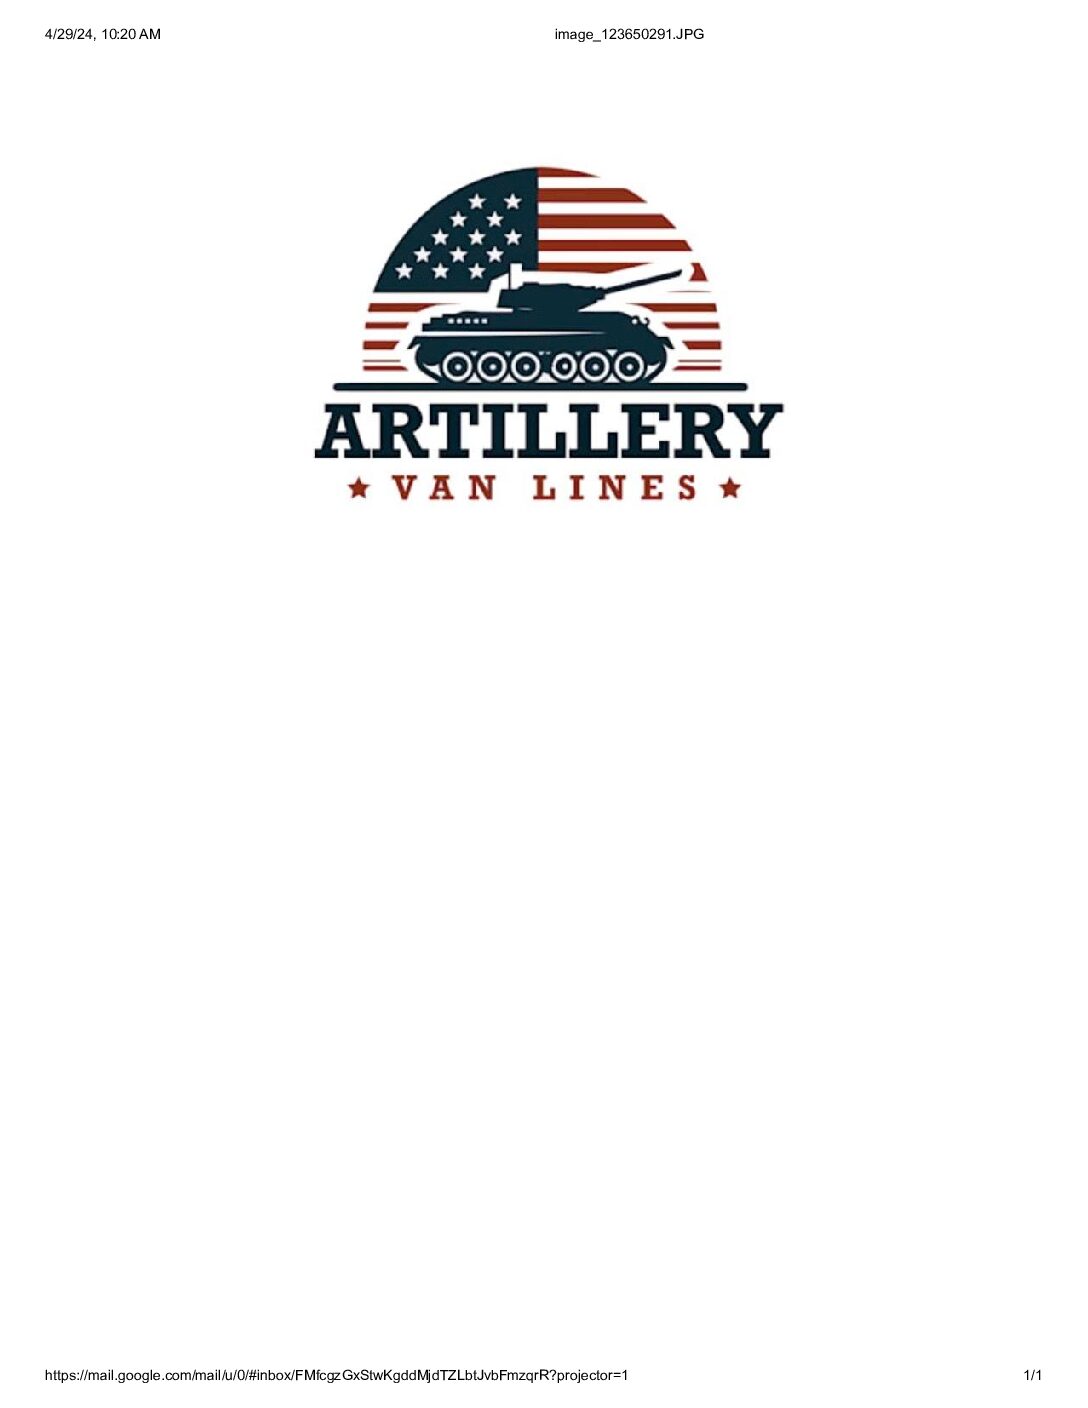 Artillery Van Lines